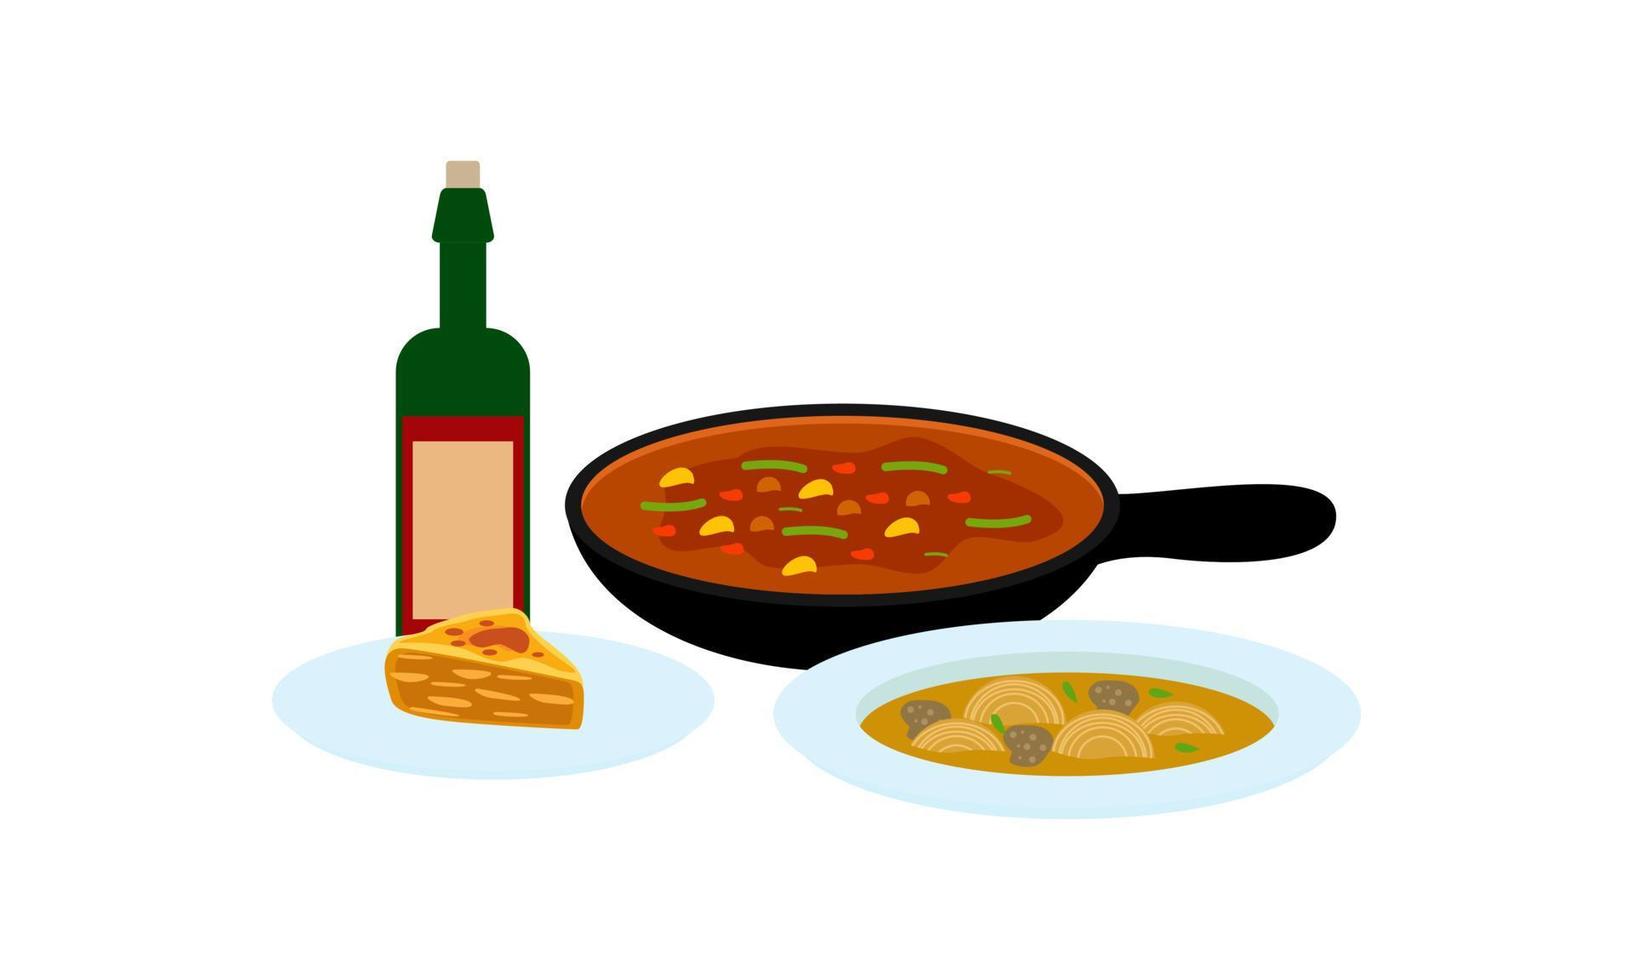 traditioneel maaltijden van verschillend keukens logo vector